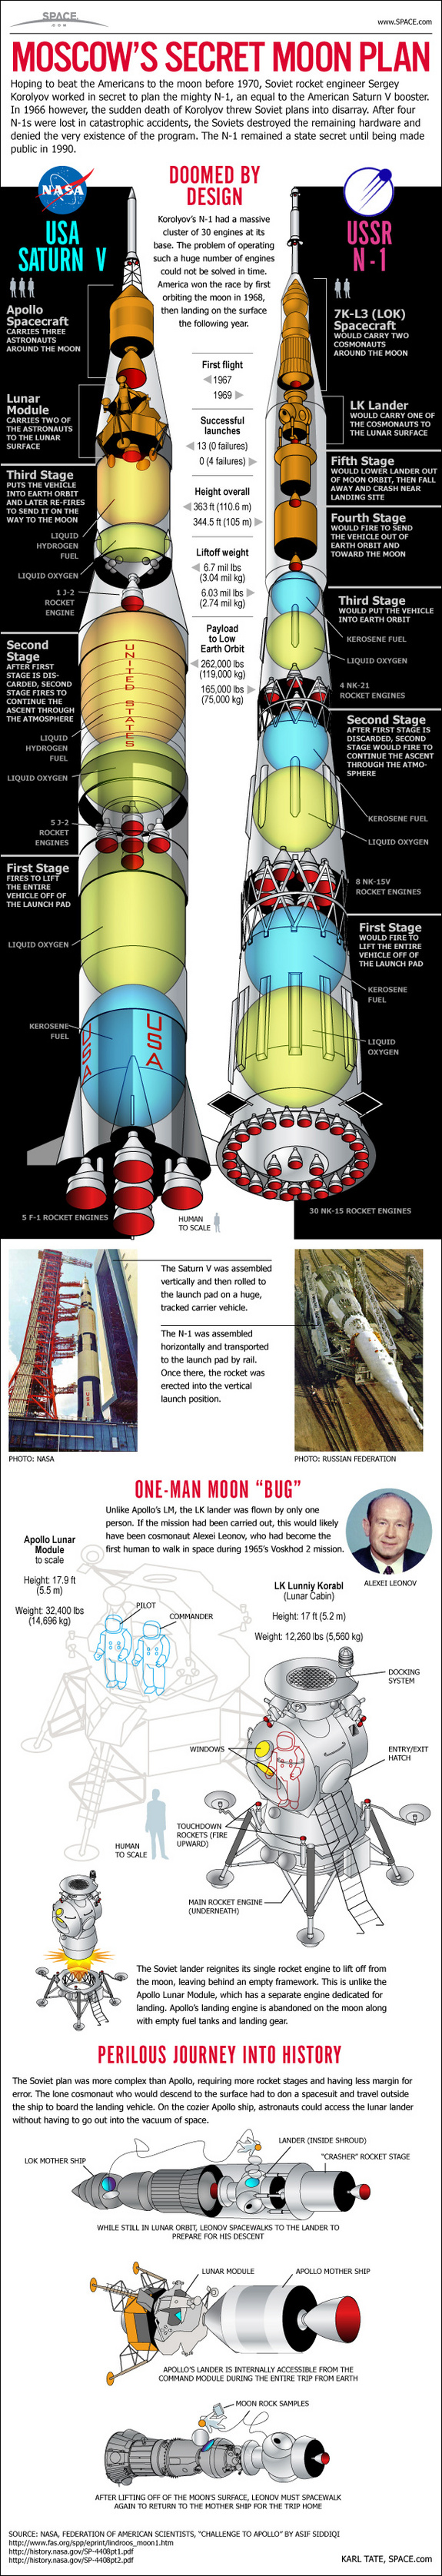 soviet-n1-moon-rocket-110118b-02